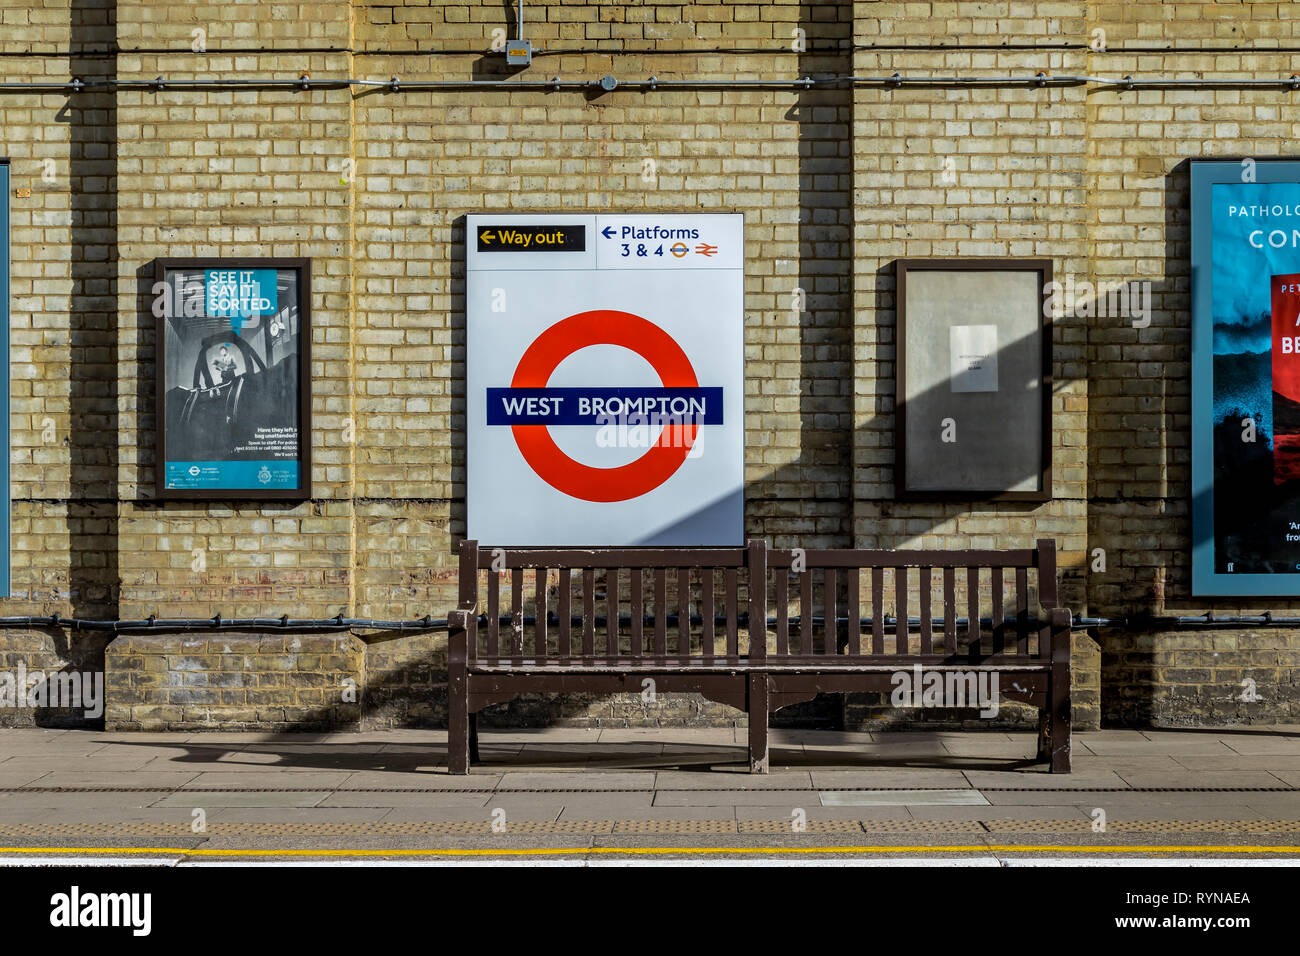 Banc sur la plate-forme de la station de métro West Brompton, South West London, Londres, Royaume-Uni Banque D'Images